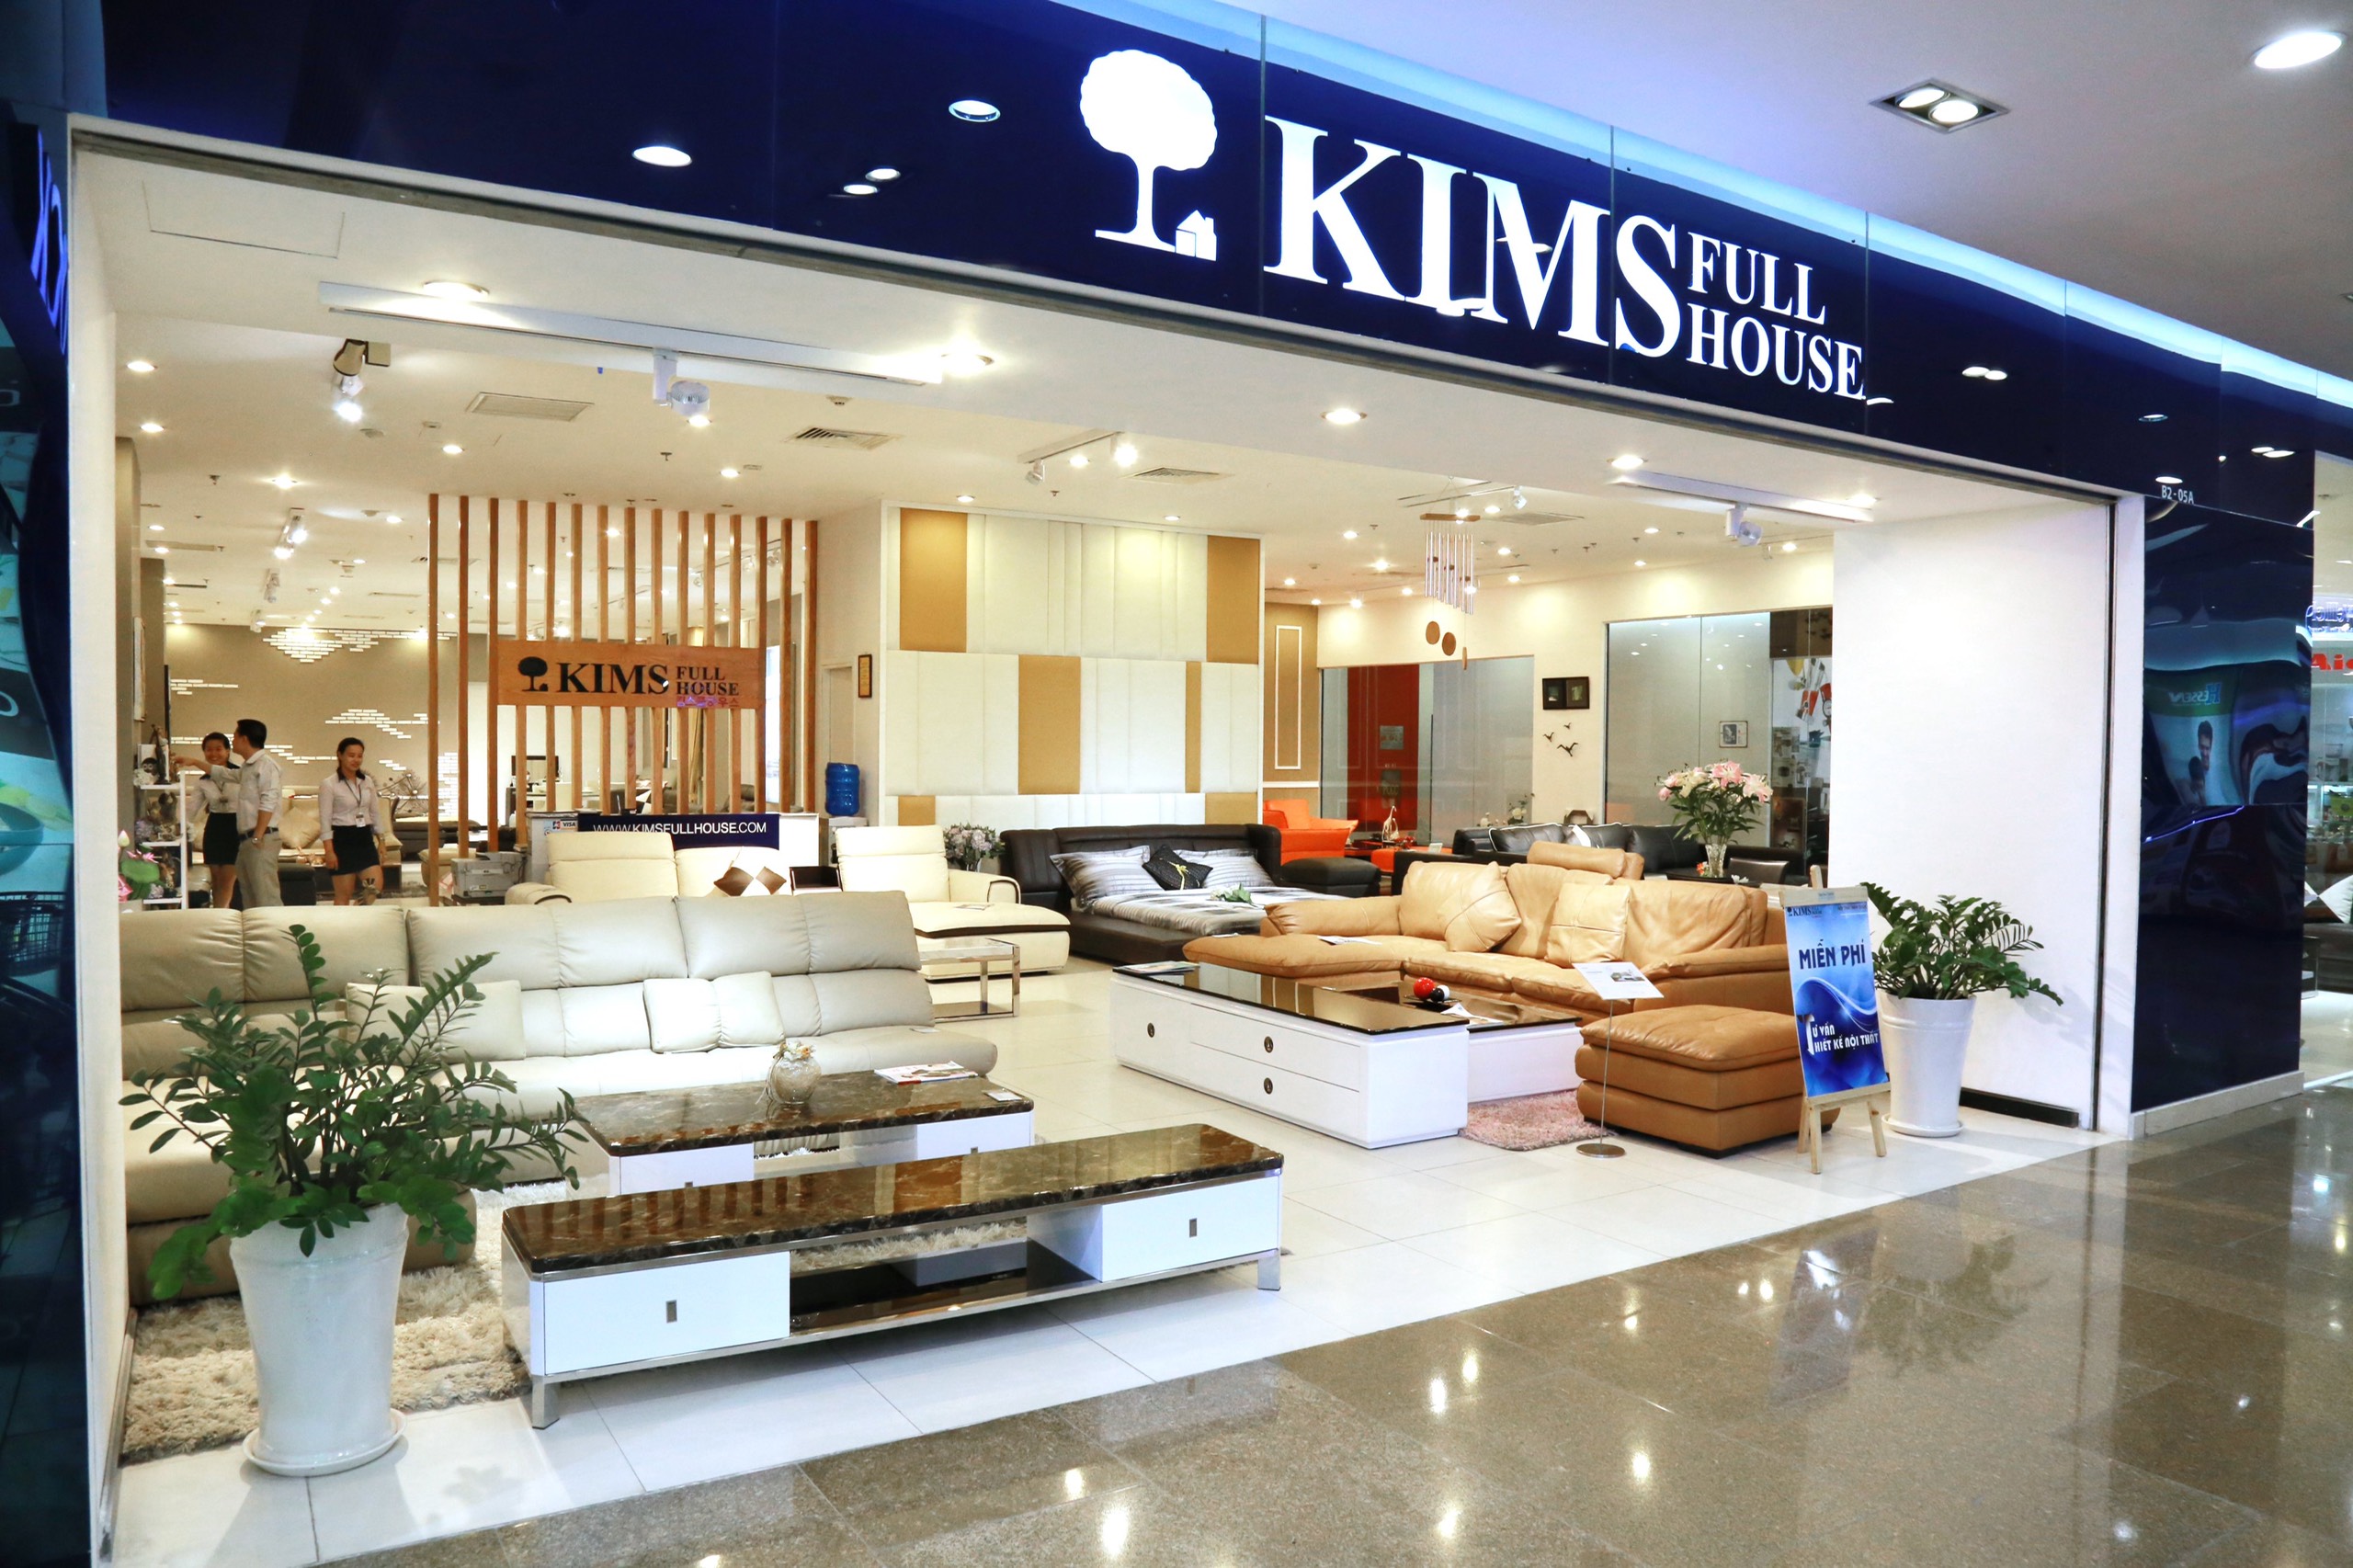 Kims Fullhouse tặng quà siêu “khủng” cho cư dân Vinhomes nhận nhà trong tháng 6 - Nội thất cao cấp Hàn Quốc KimFullHouse